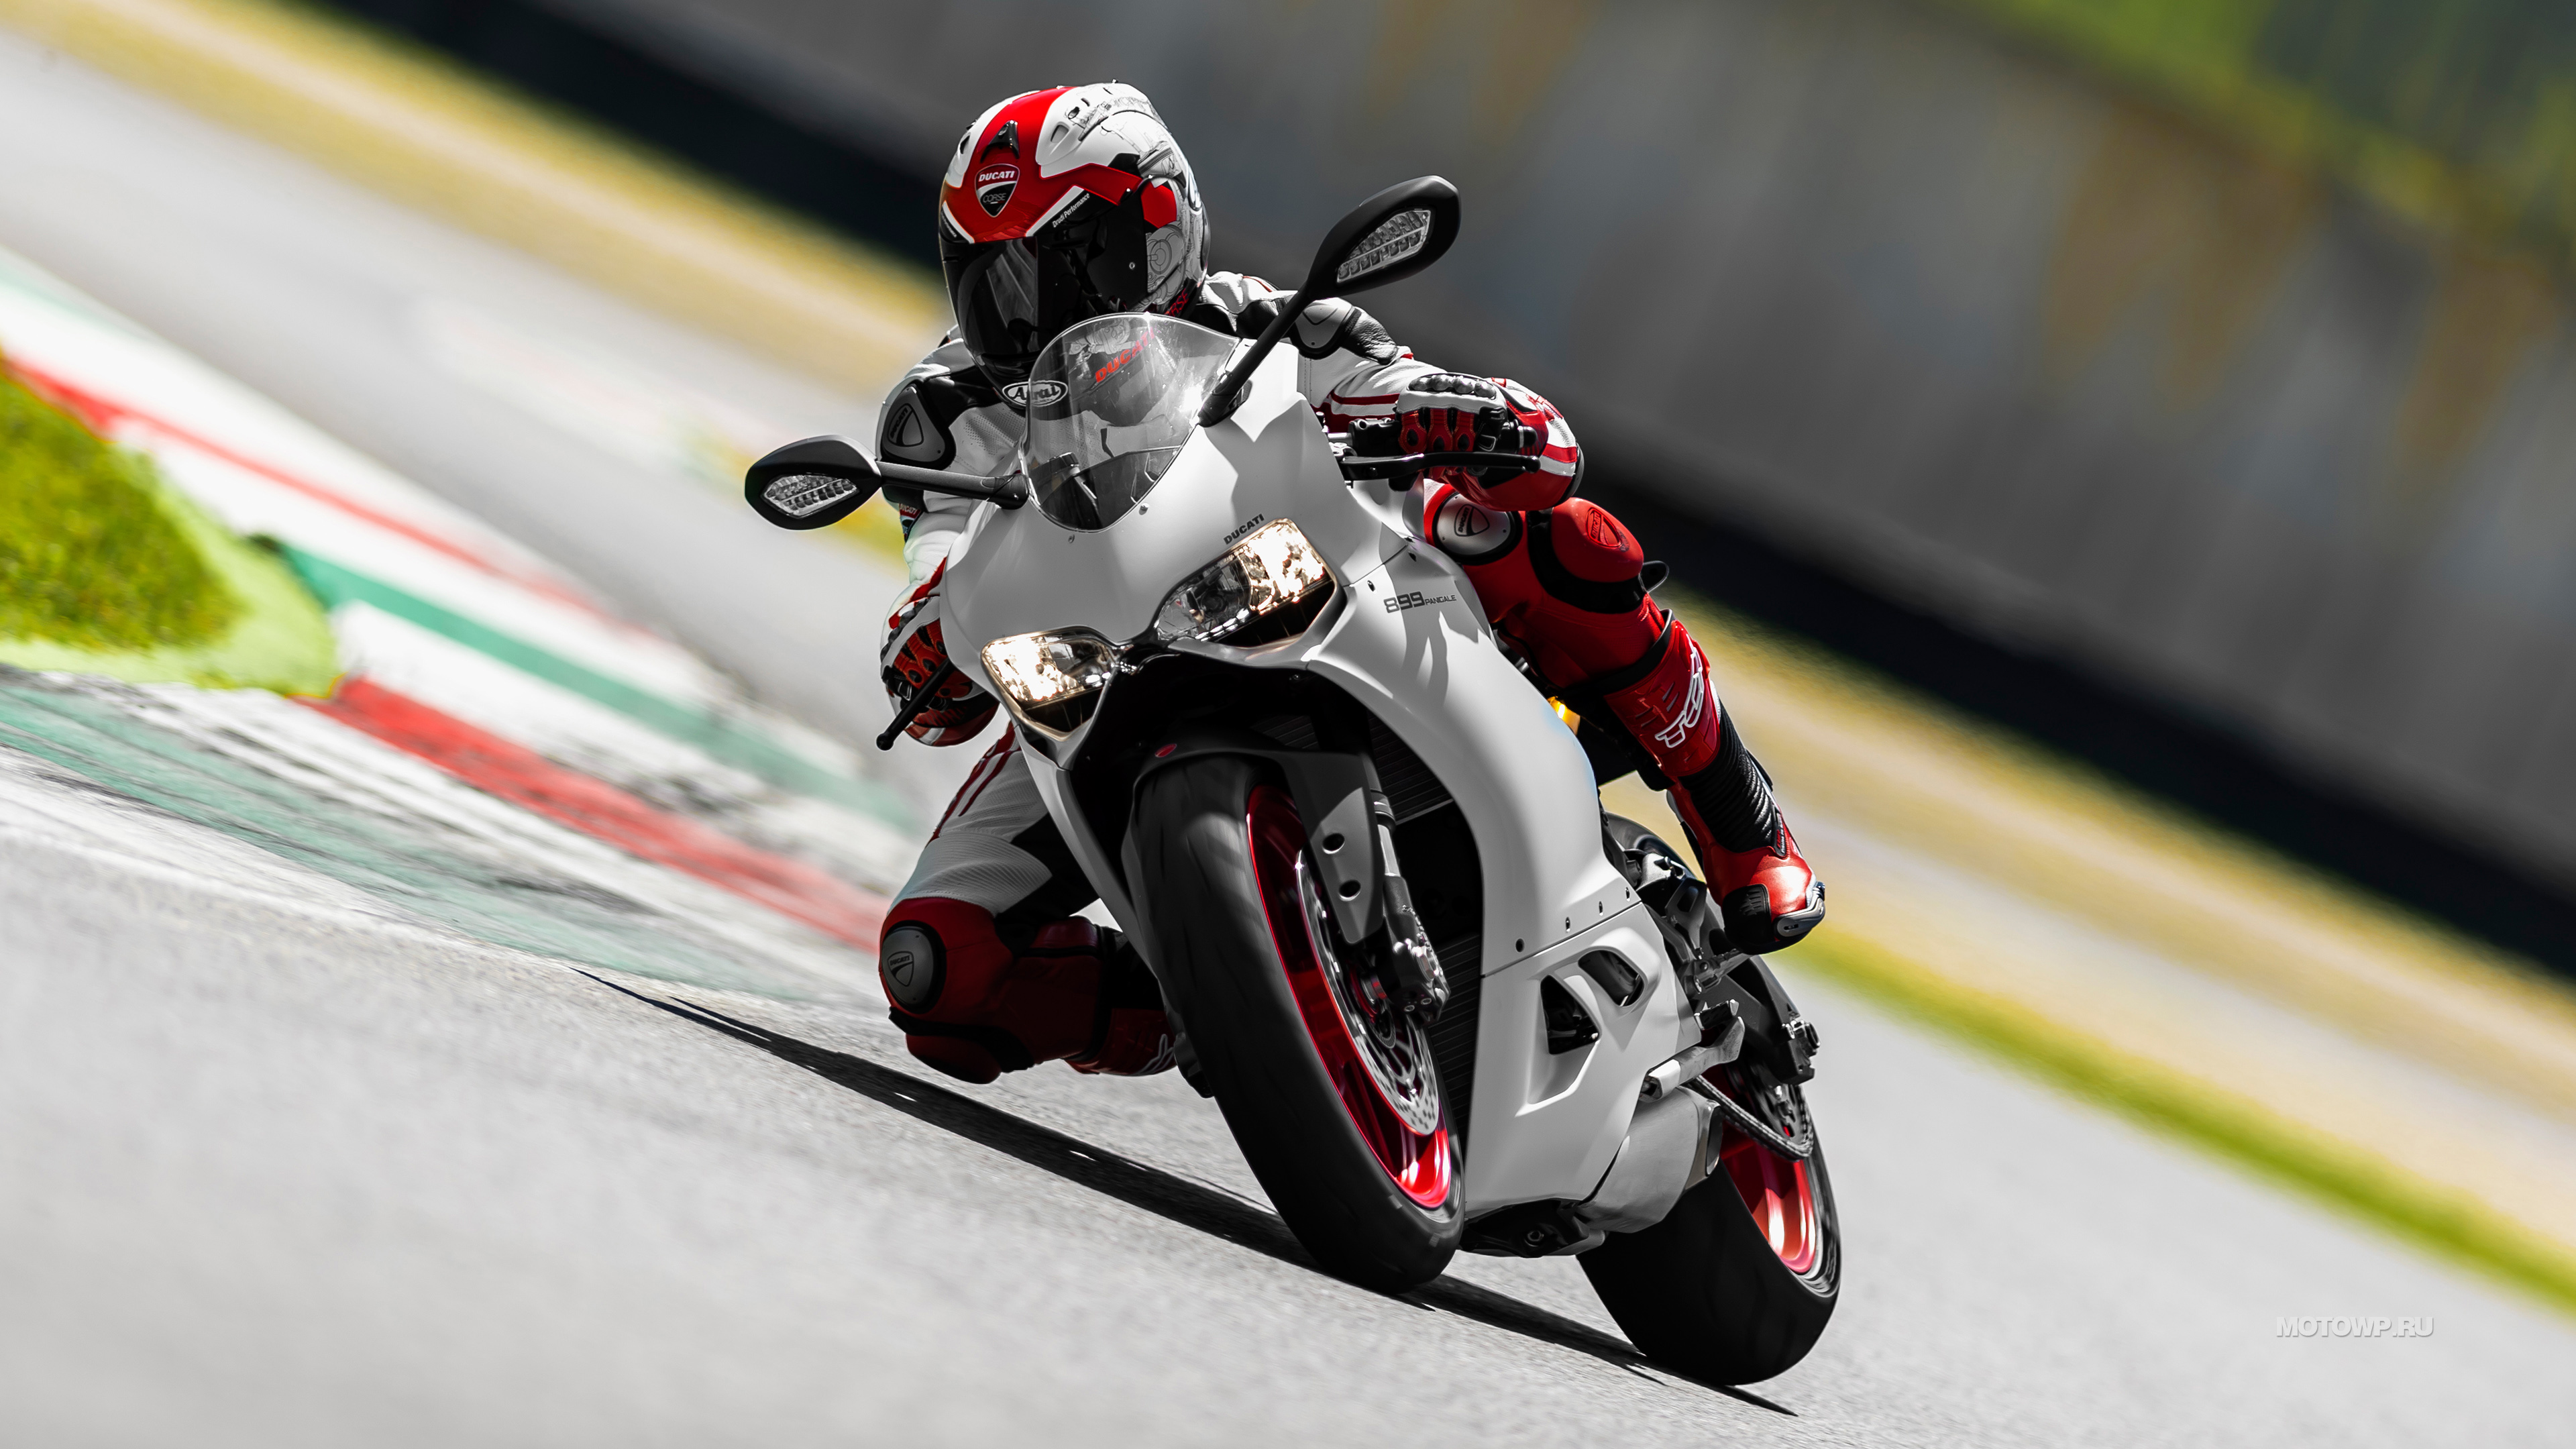 Ducati Panigale 899 — Стильный, Мощный и Дерзкий спортбайк